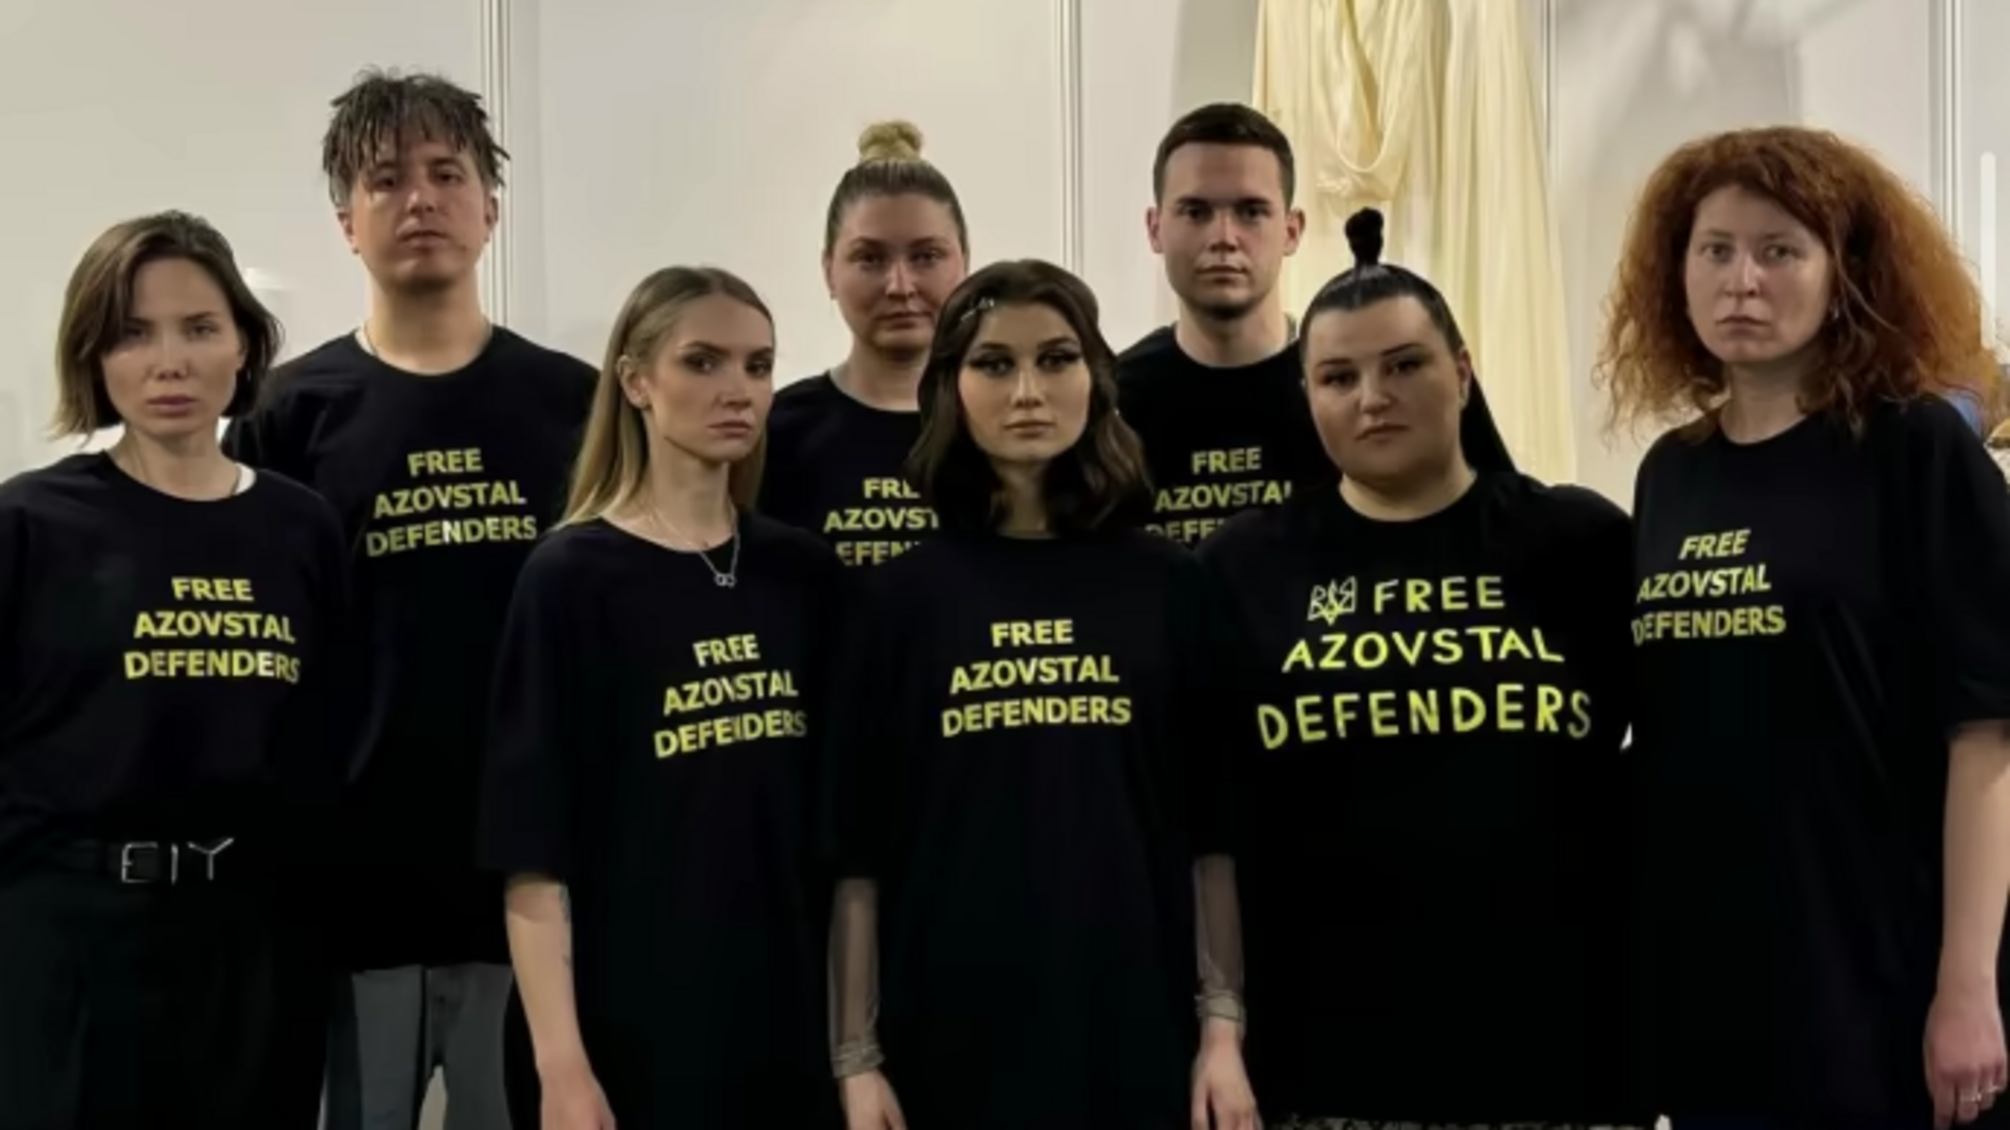 'Общественное вещание' опровергло заявление alyona alyona о штрафе за футболки Free Azovstal Defenders на Евровидении